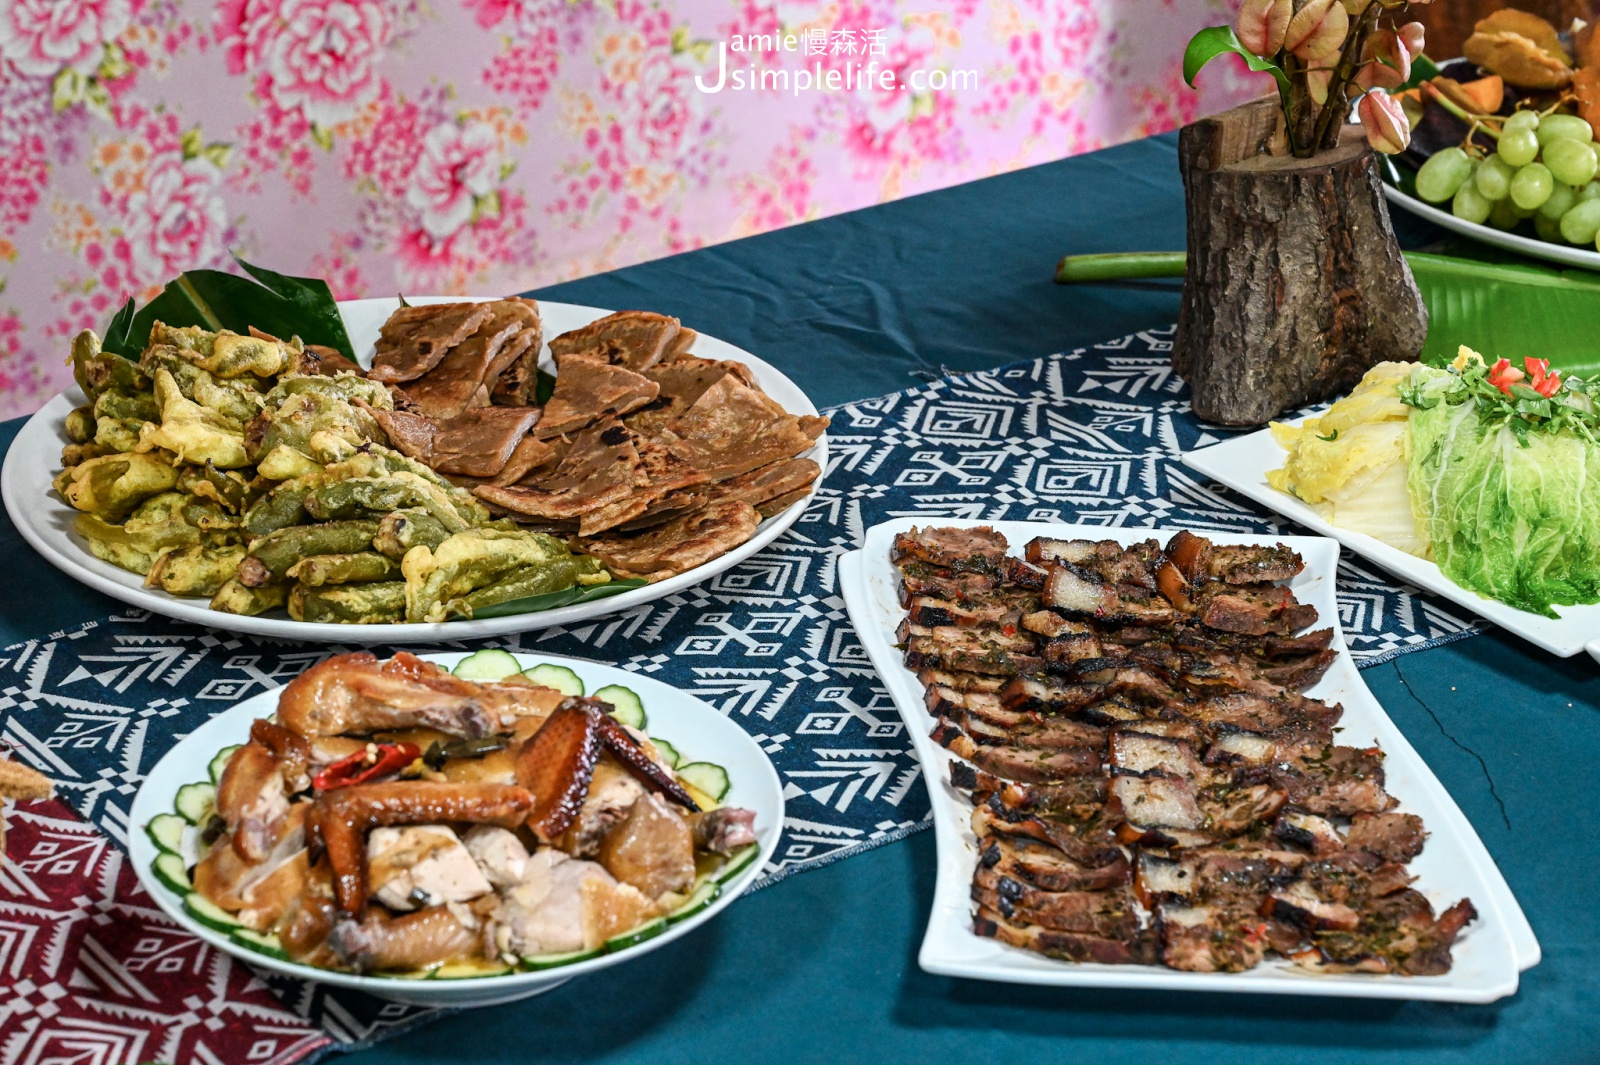 屏東恆春鎮 牡丹鄉 高士社區發展協會 在地風味料理 甜點、雞肉與豬肉